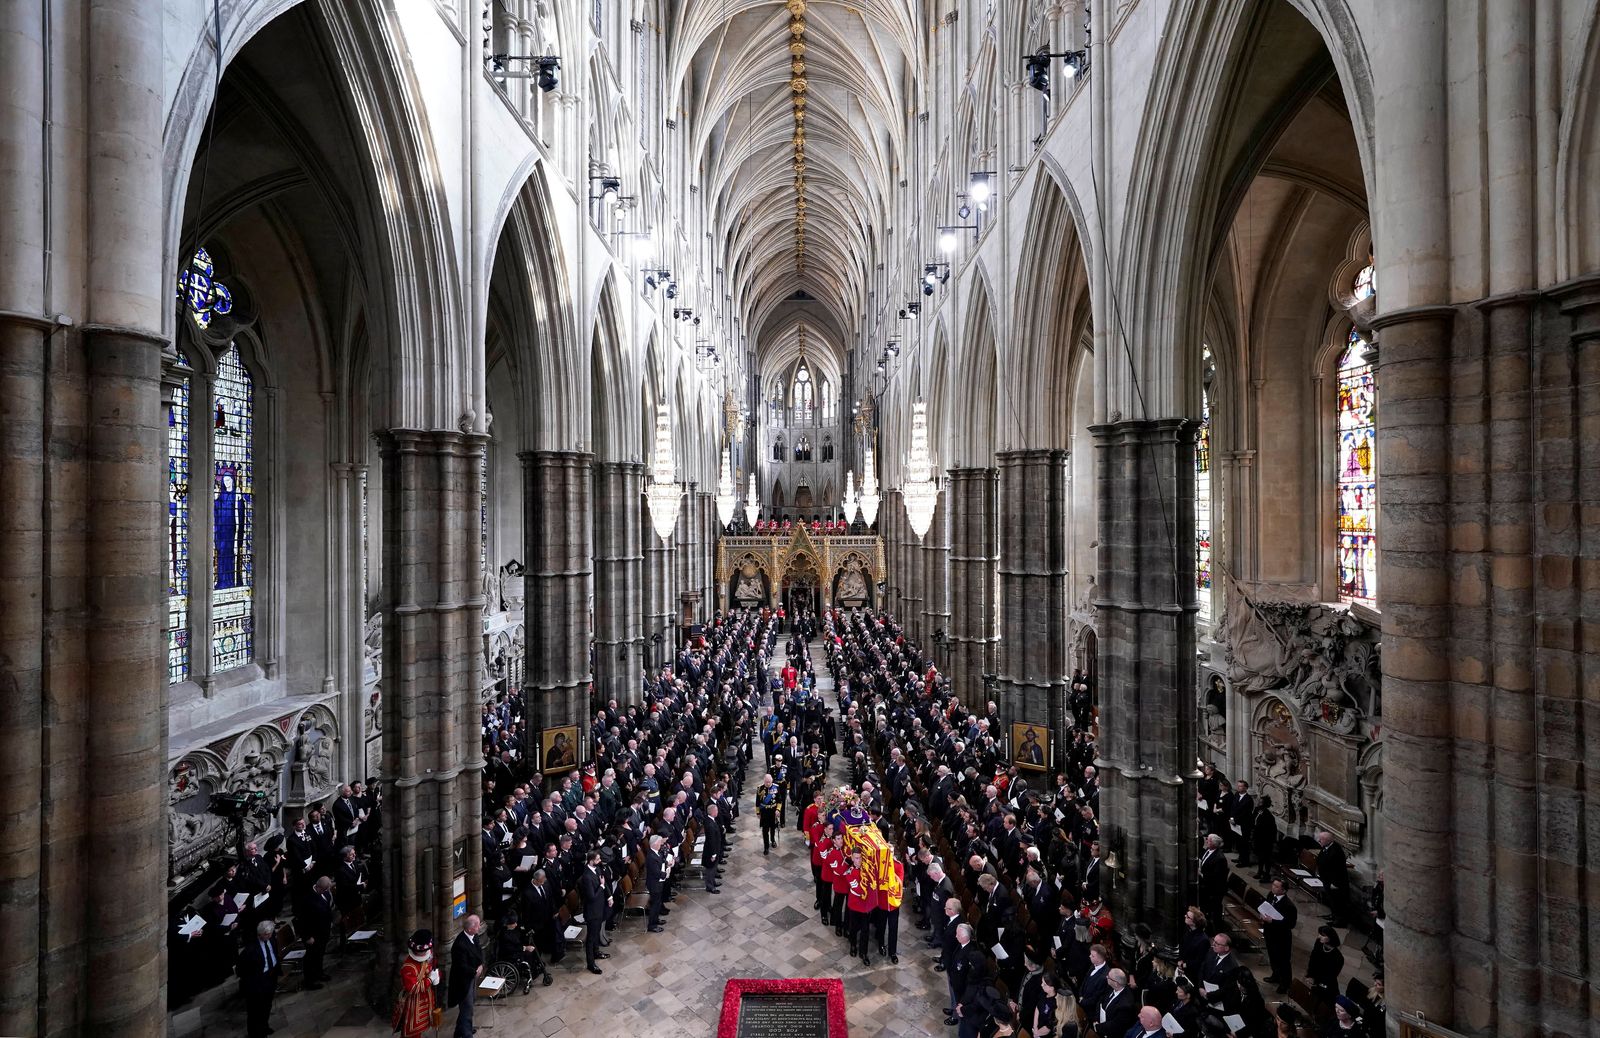 الملك تشارلز الثالث وأفراد العائلة المالكة يسيرون وراء نعش الملكة إليزابيث الثانية في كنيسة وستمنستر غربي لندن- الاثنين 19 سبتمبر 2022 - via REUTERS